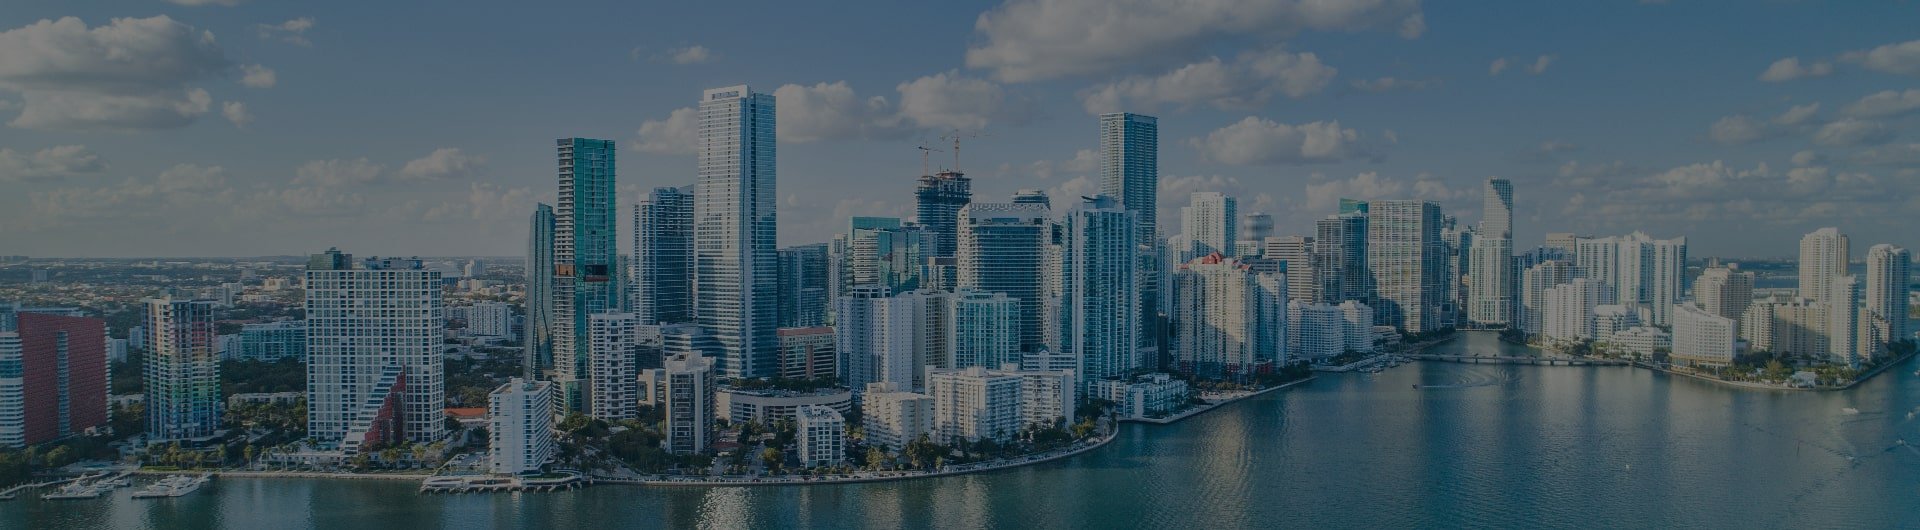 Downtown Miami waterfront.